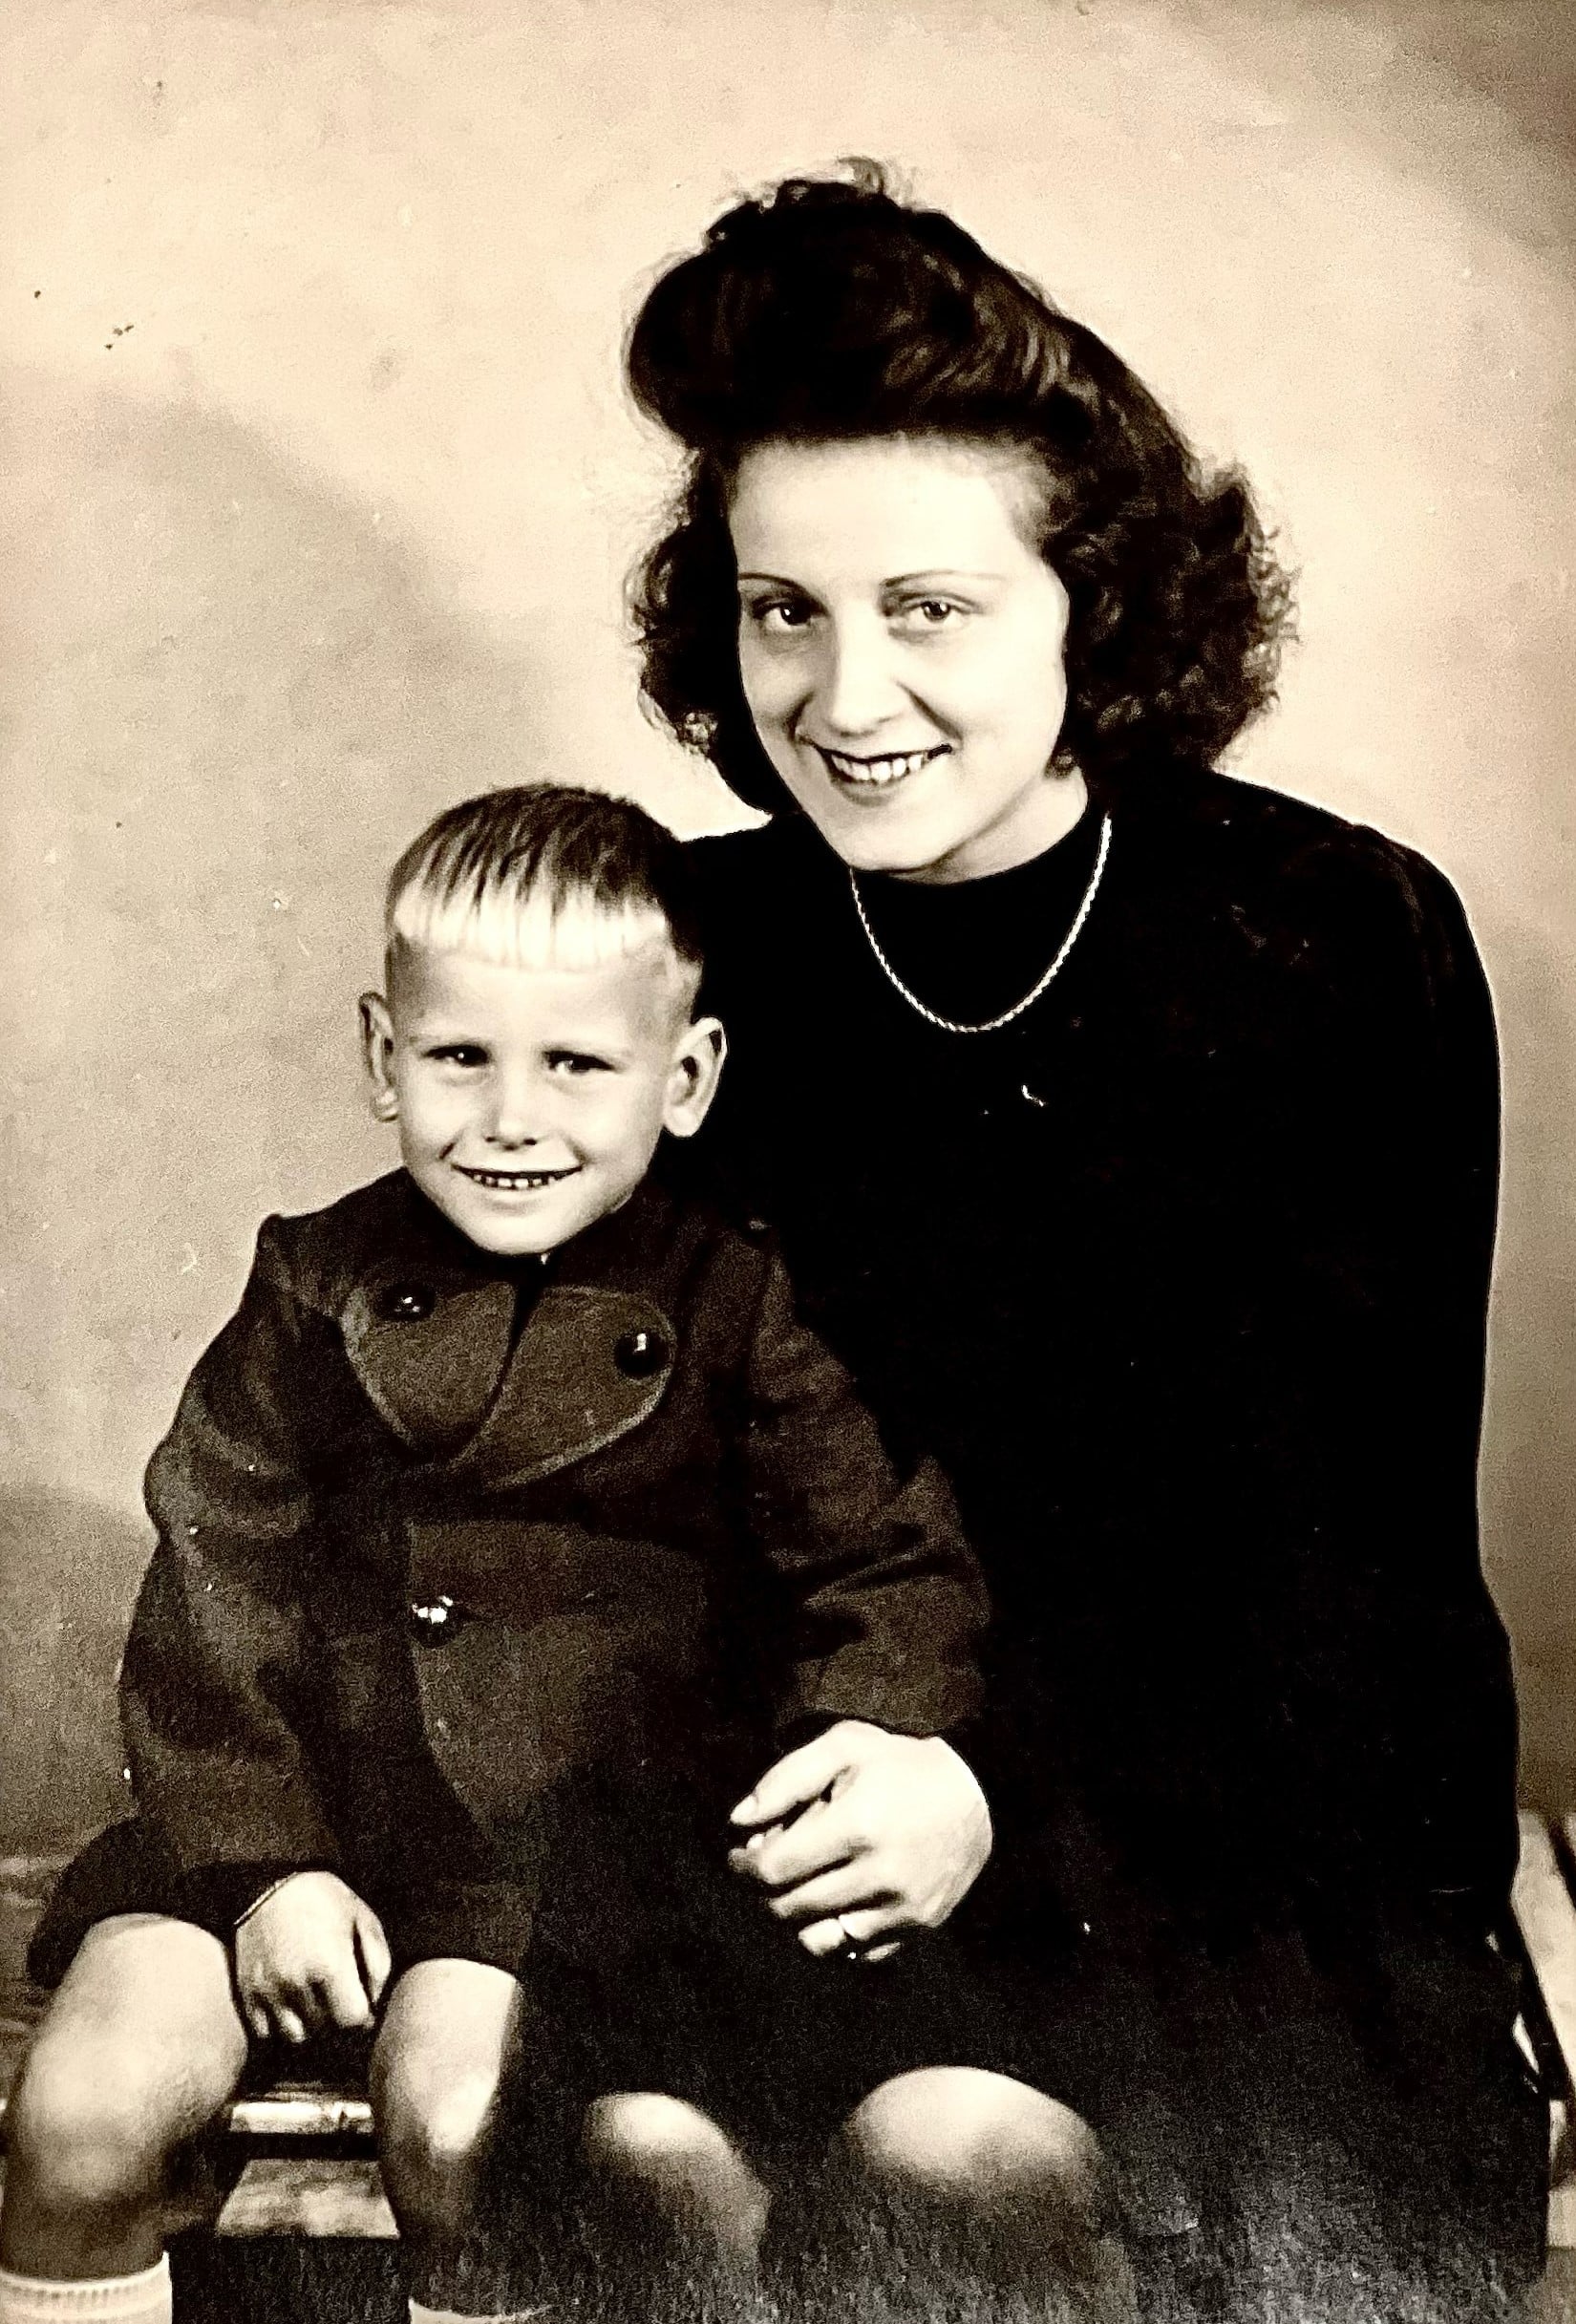 Fred en zijn moeder tijdens een bezoek aan het weeshuis